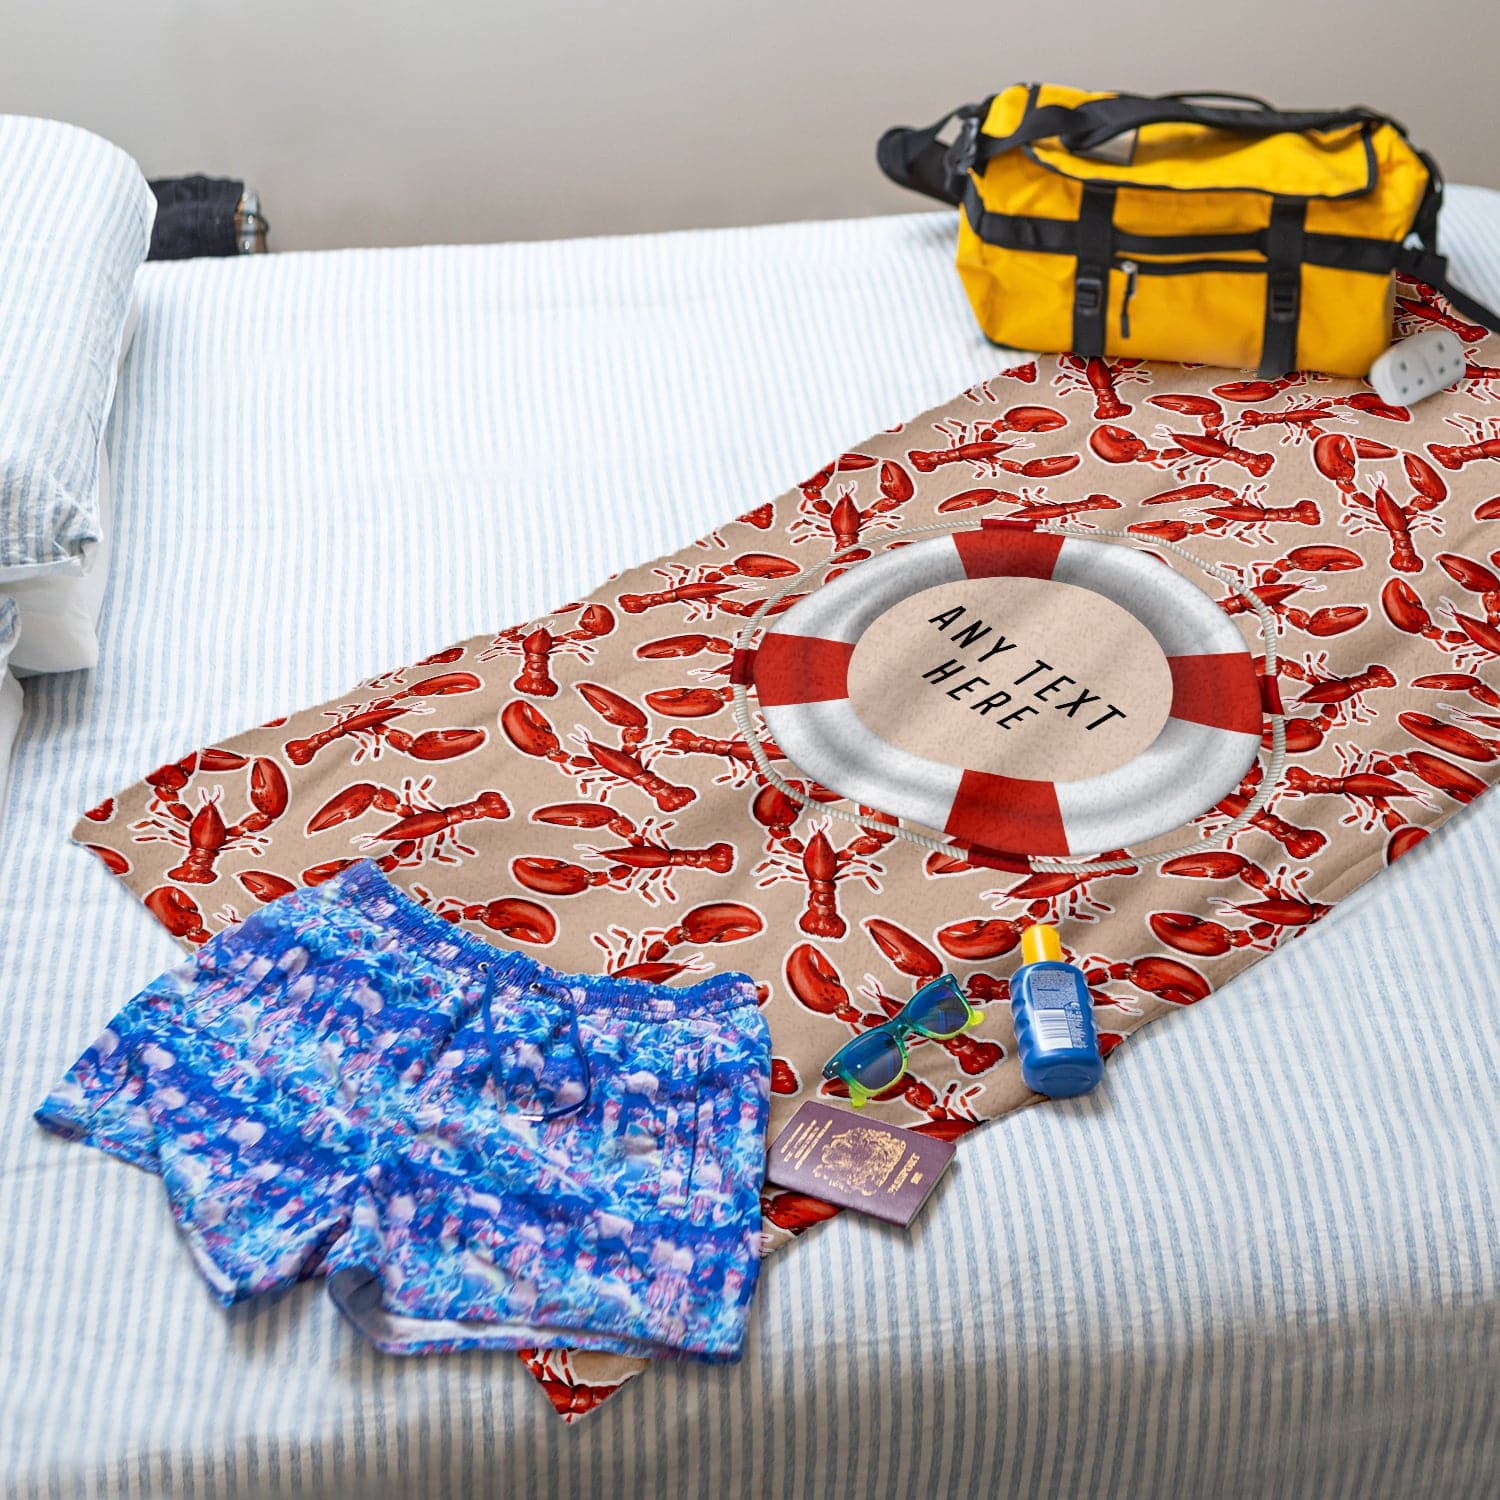 Personalised Beach Towel - Lobster Design